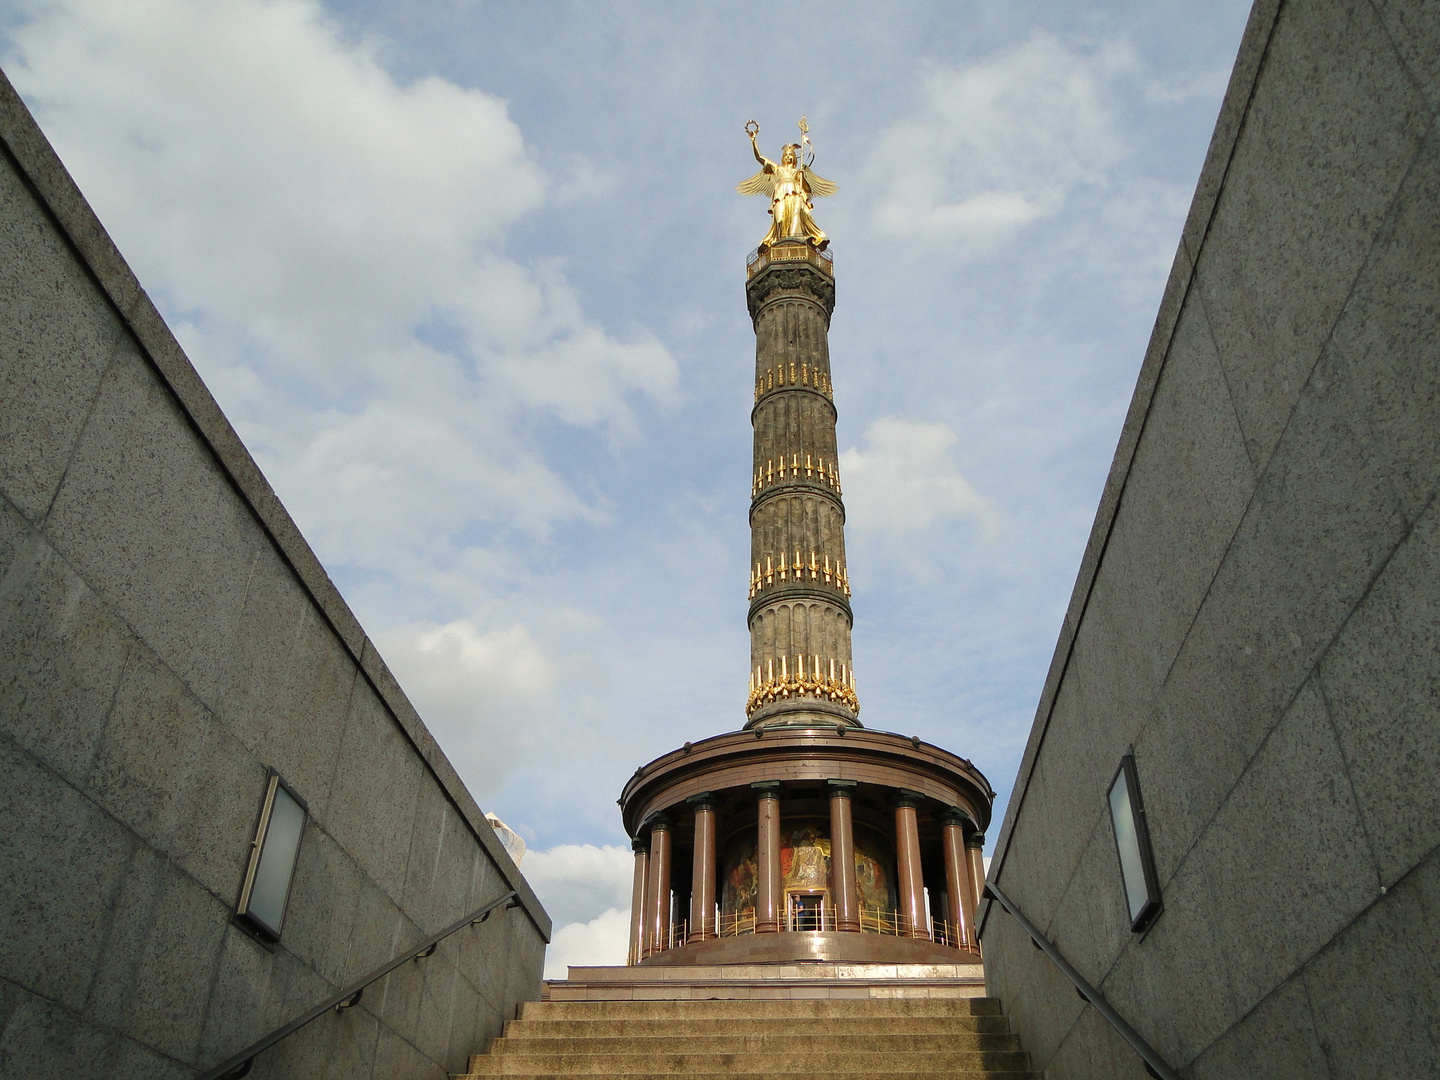 Siegessäule in Berlin